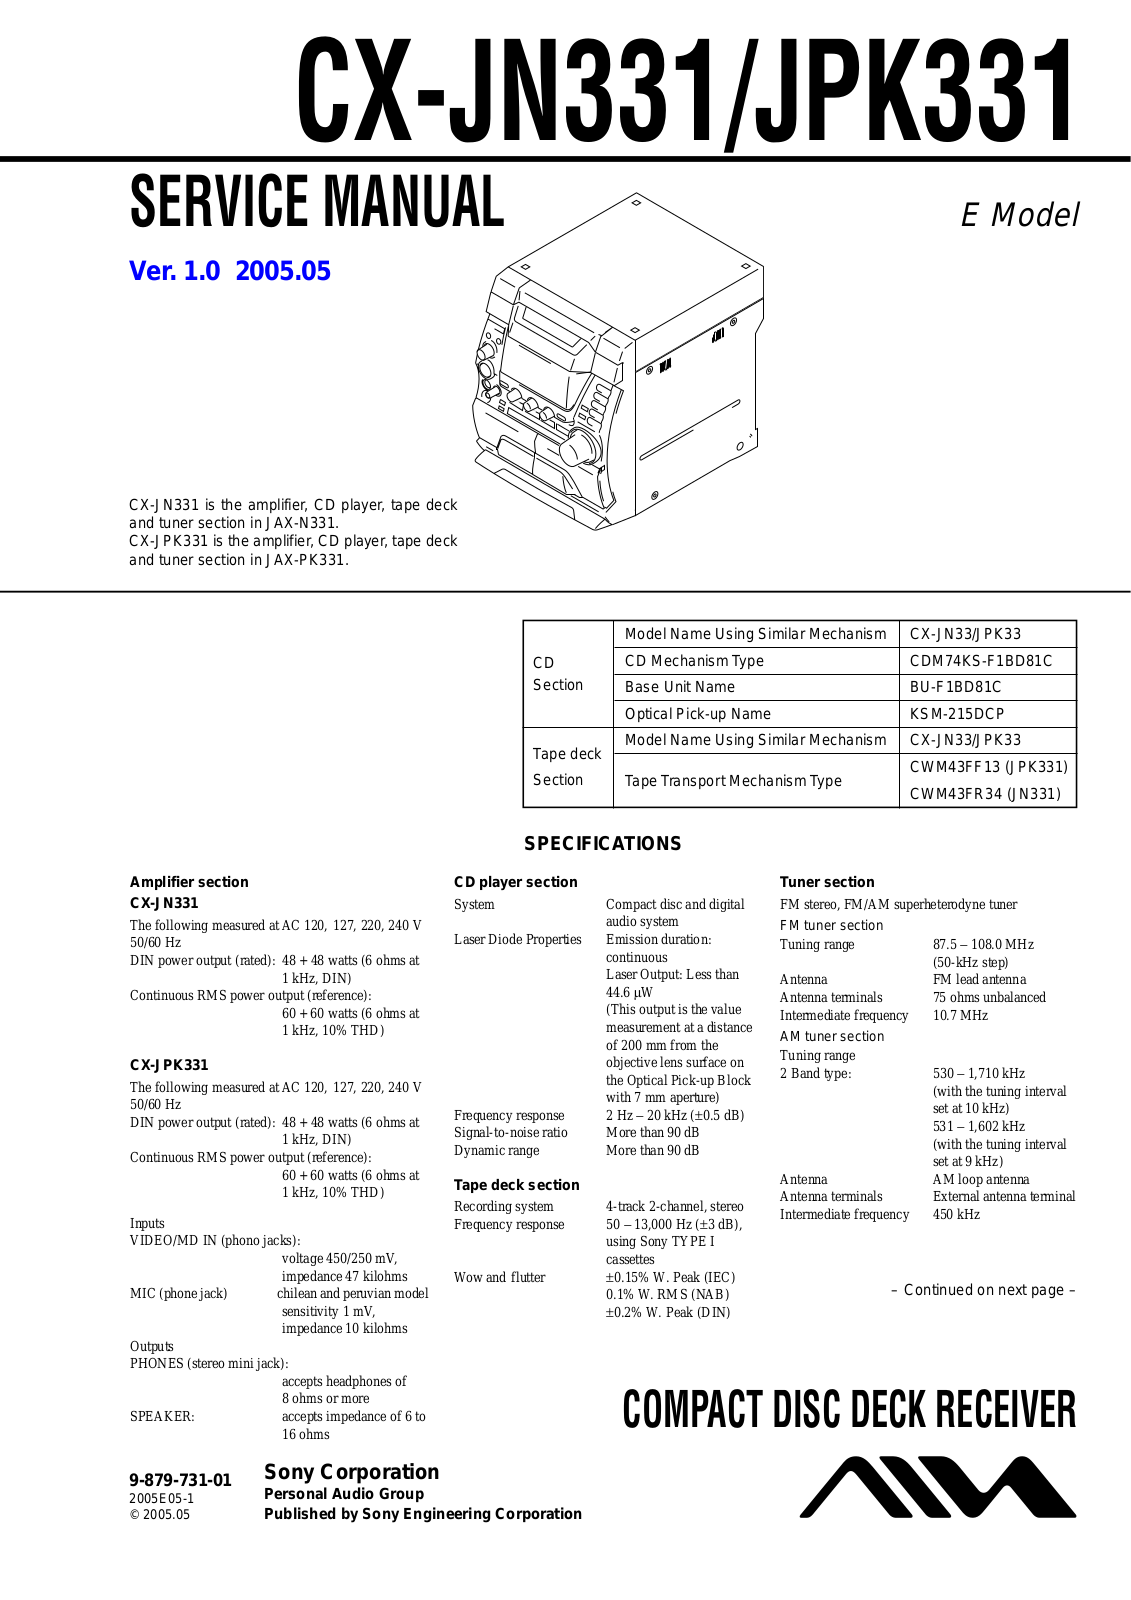 Aiwa CX-JN331, CX-JPK331 Service Manual